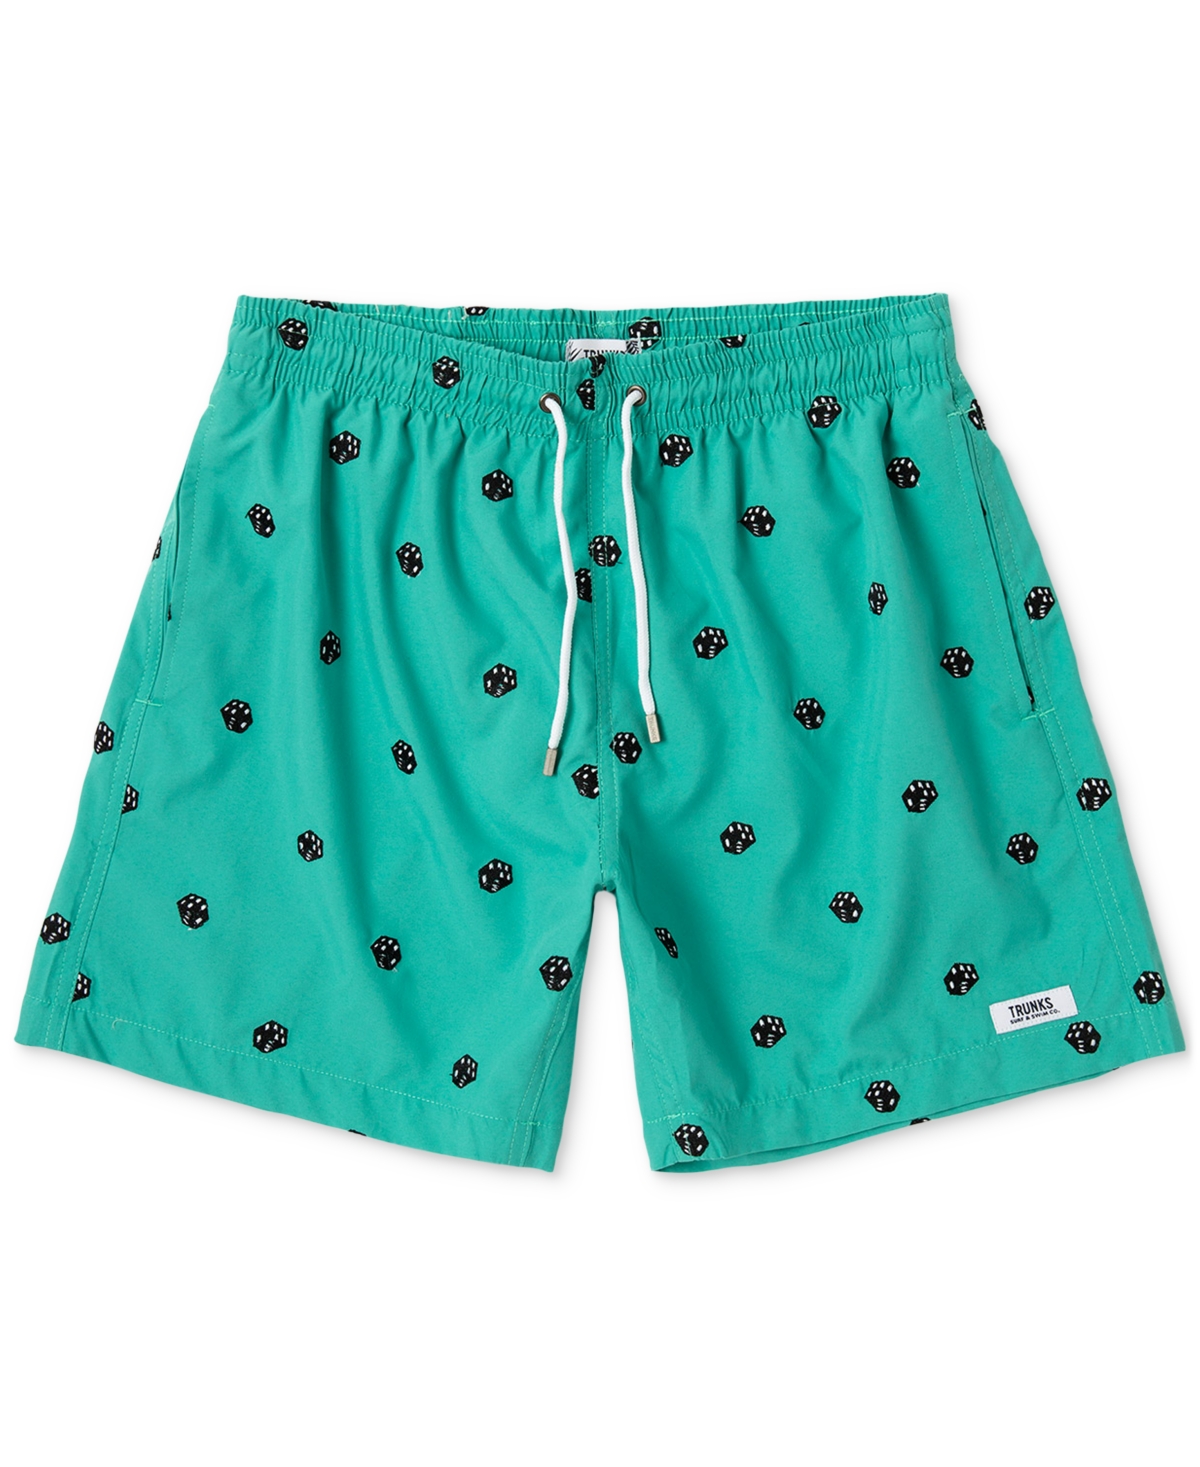 Men's Embroidered Sano 6" Swim Shorts - Dice